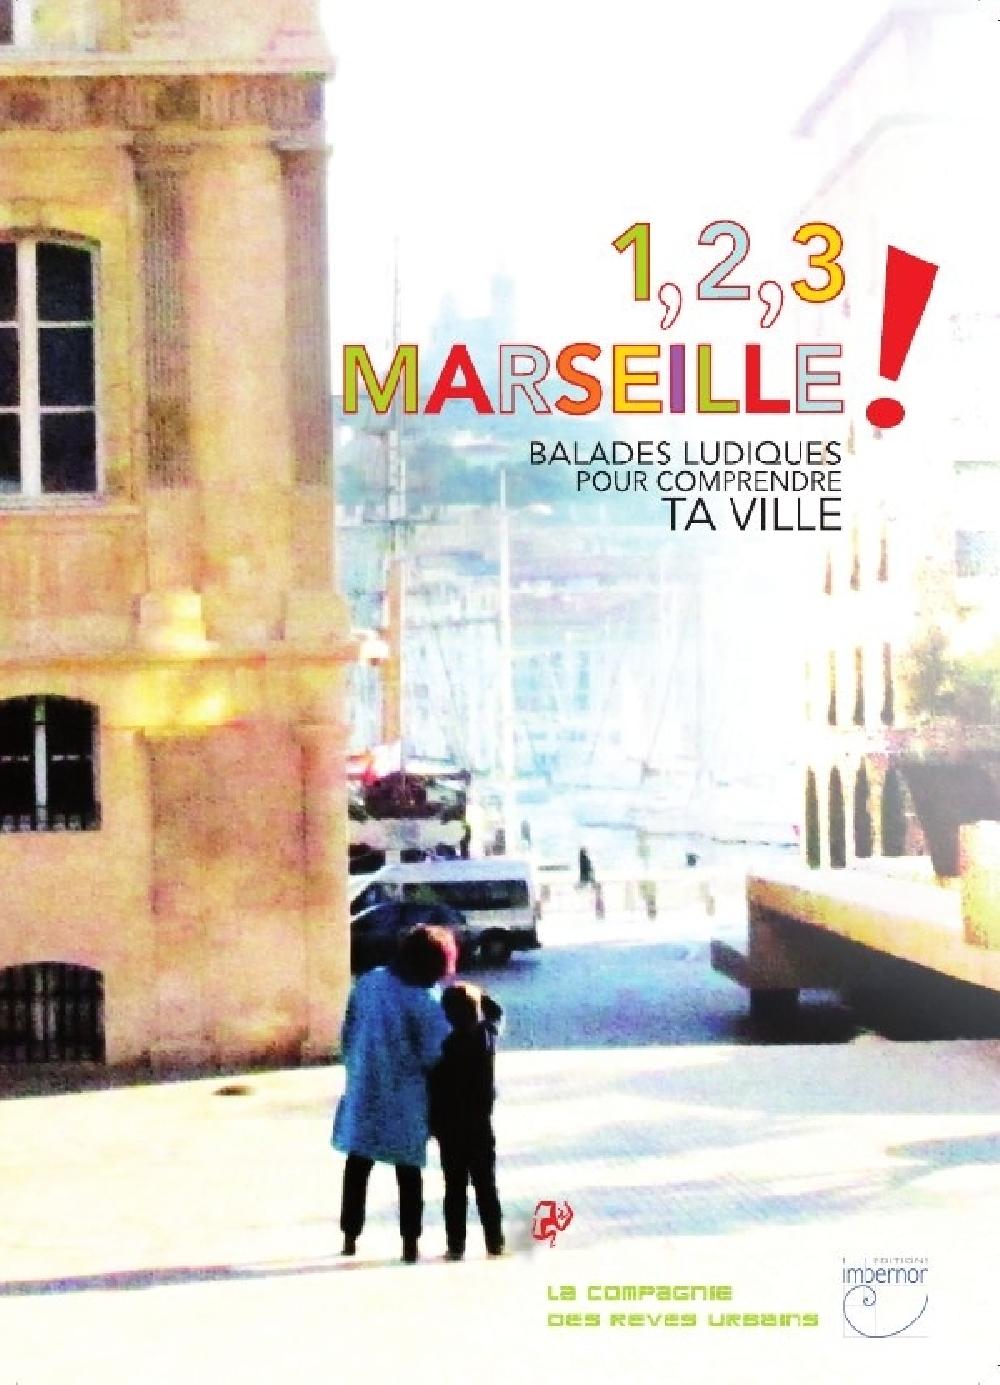 1, 2, 3 Marseille !